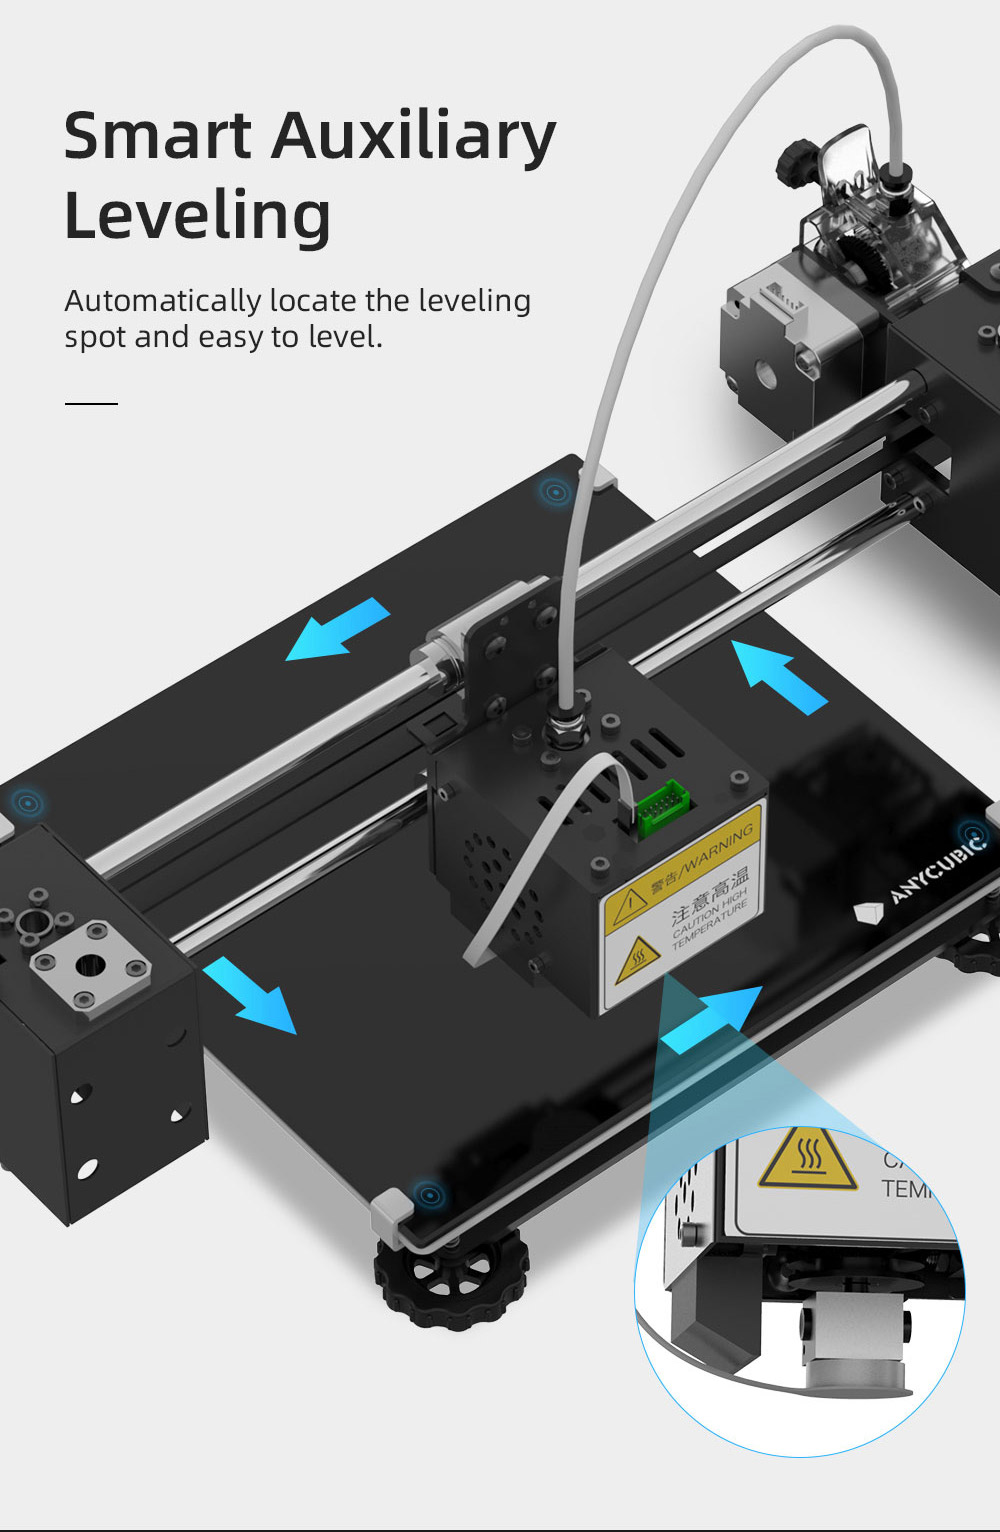 Impressora Anycubic Mega Pro 3D Impressão 2D 1 em 3 e Gravação a laser Extrusora dupla engrenagem de nivelamento auxiliar inteligente 210x210x205 mm